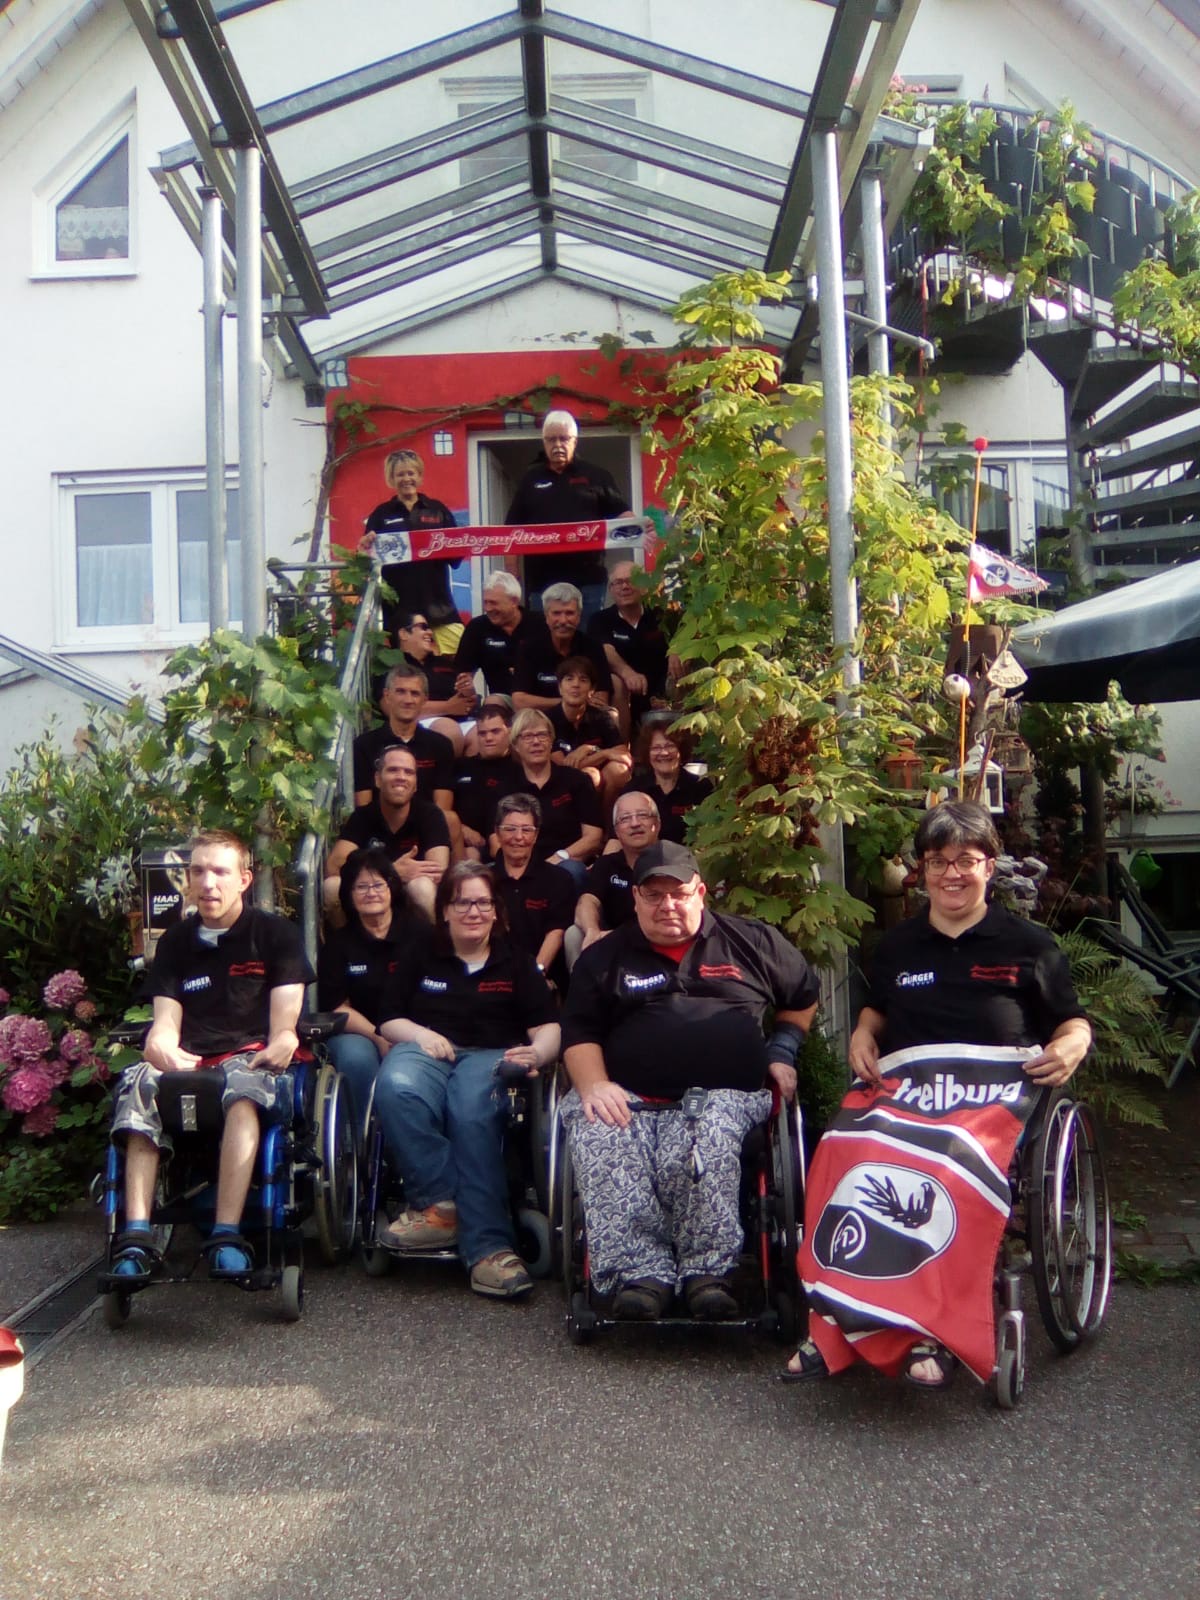 Gruppenfoto der Vereinsmitglieder vor einem Hauseingang. Mitglieder sitzen auf der Treppen und Rollstuhlfahrende davor.